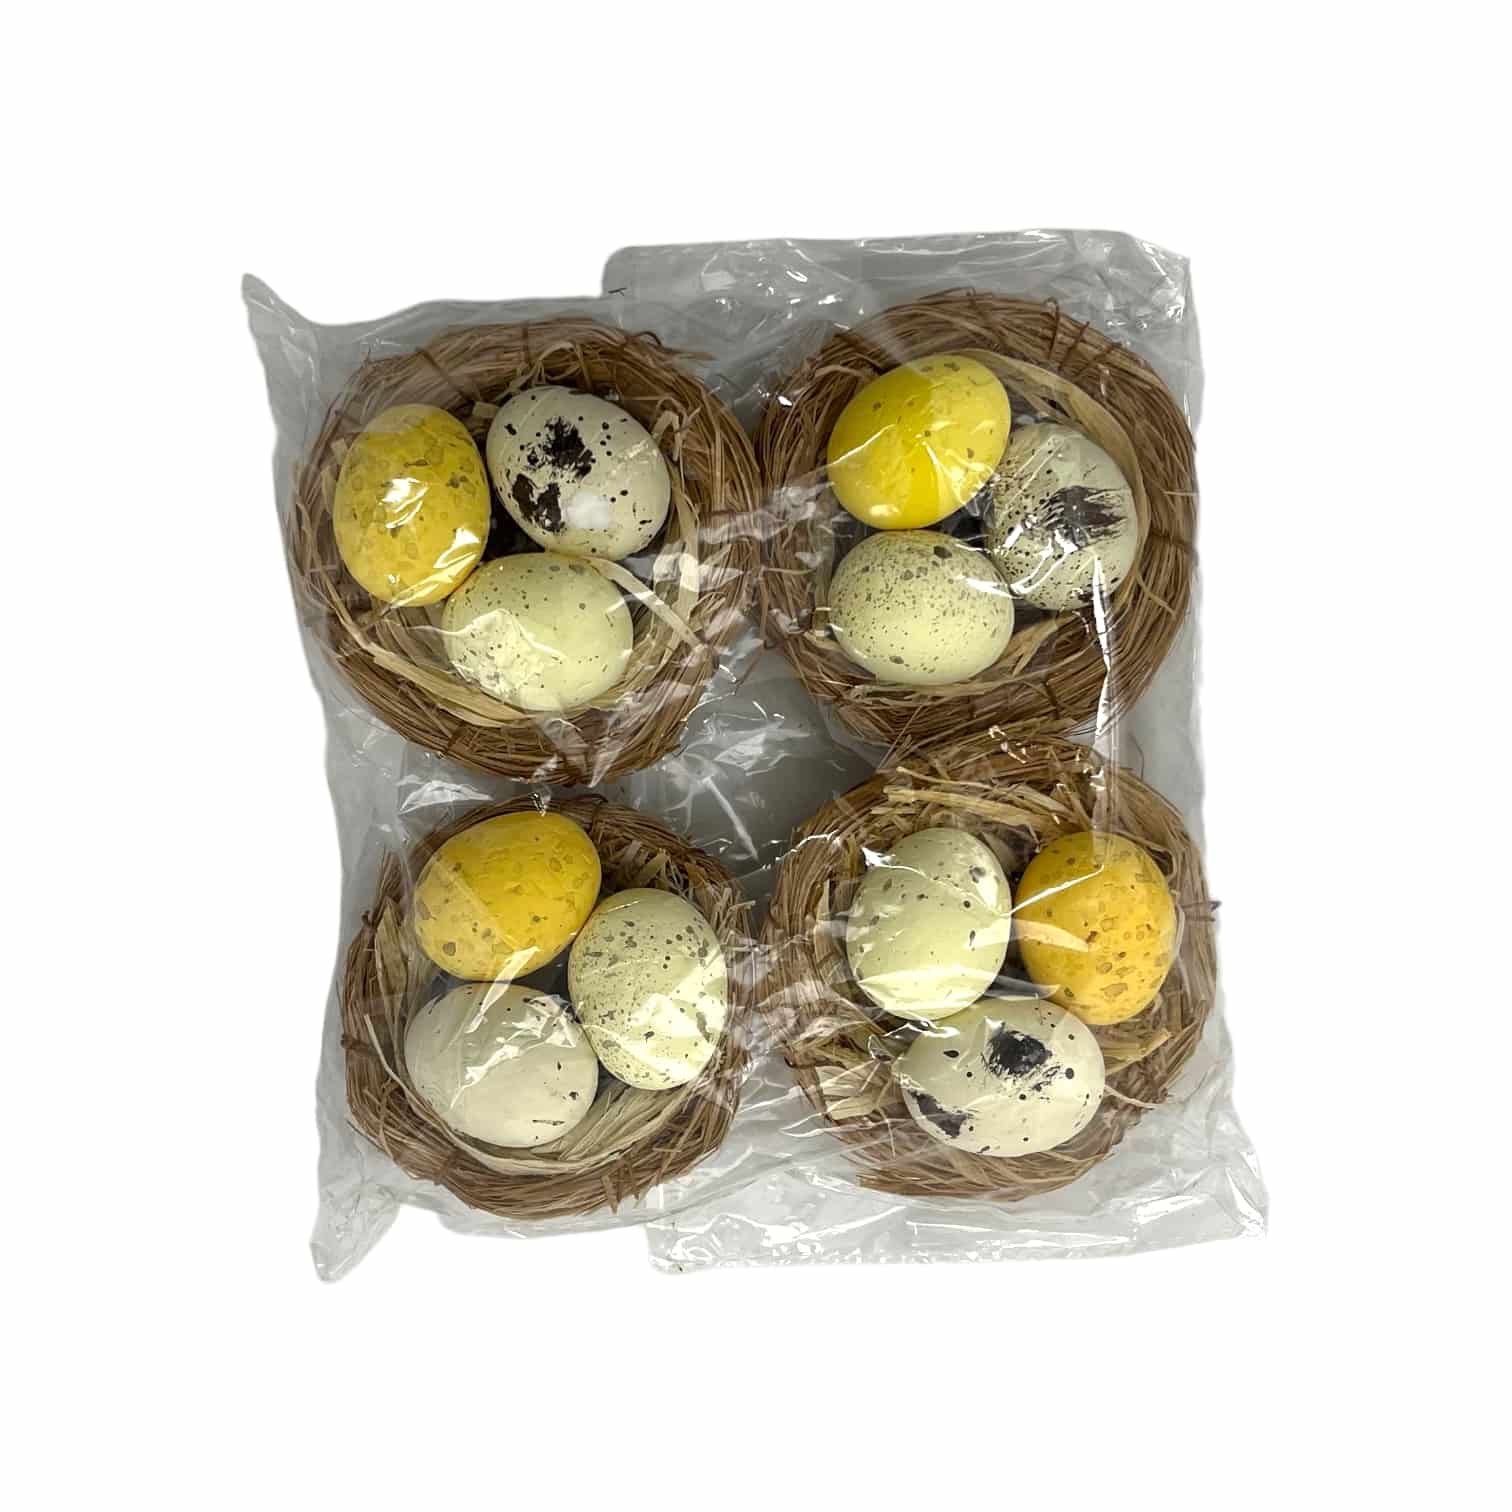 4 Osternester mit 3 Eiern (gelb, hellgelb, creme)